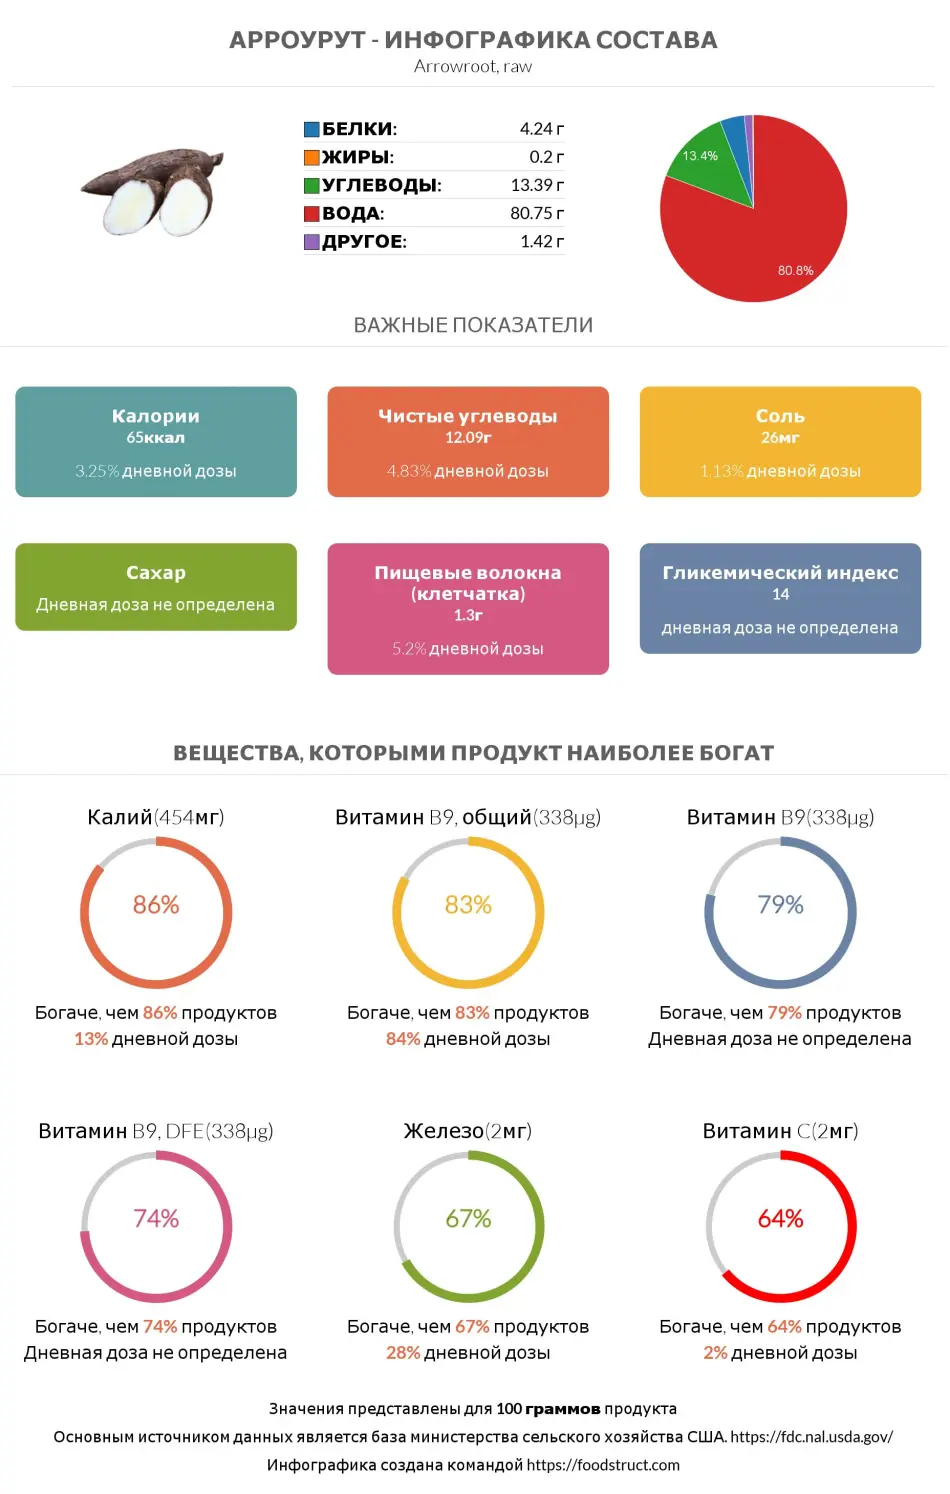 Инфографика состава и питательности для продукта Арроурут